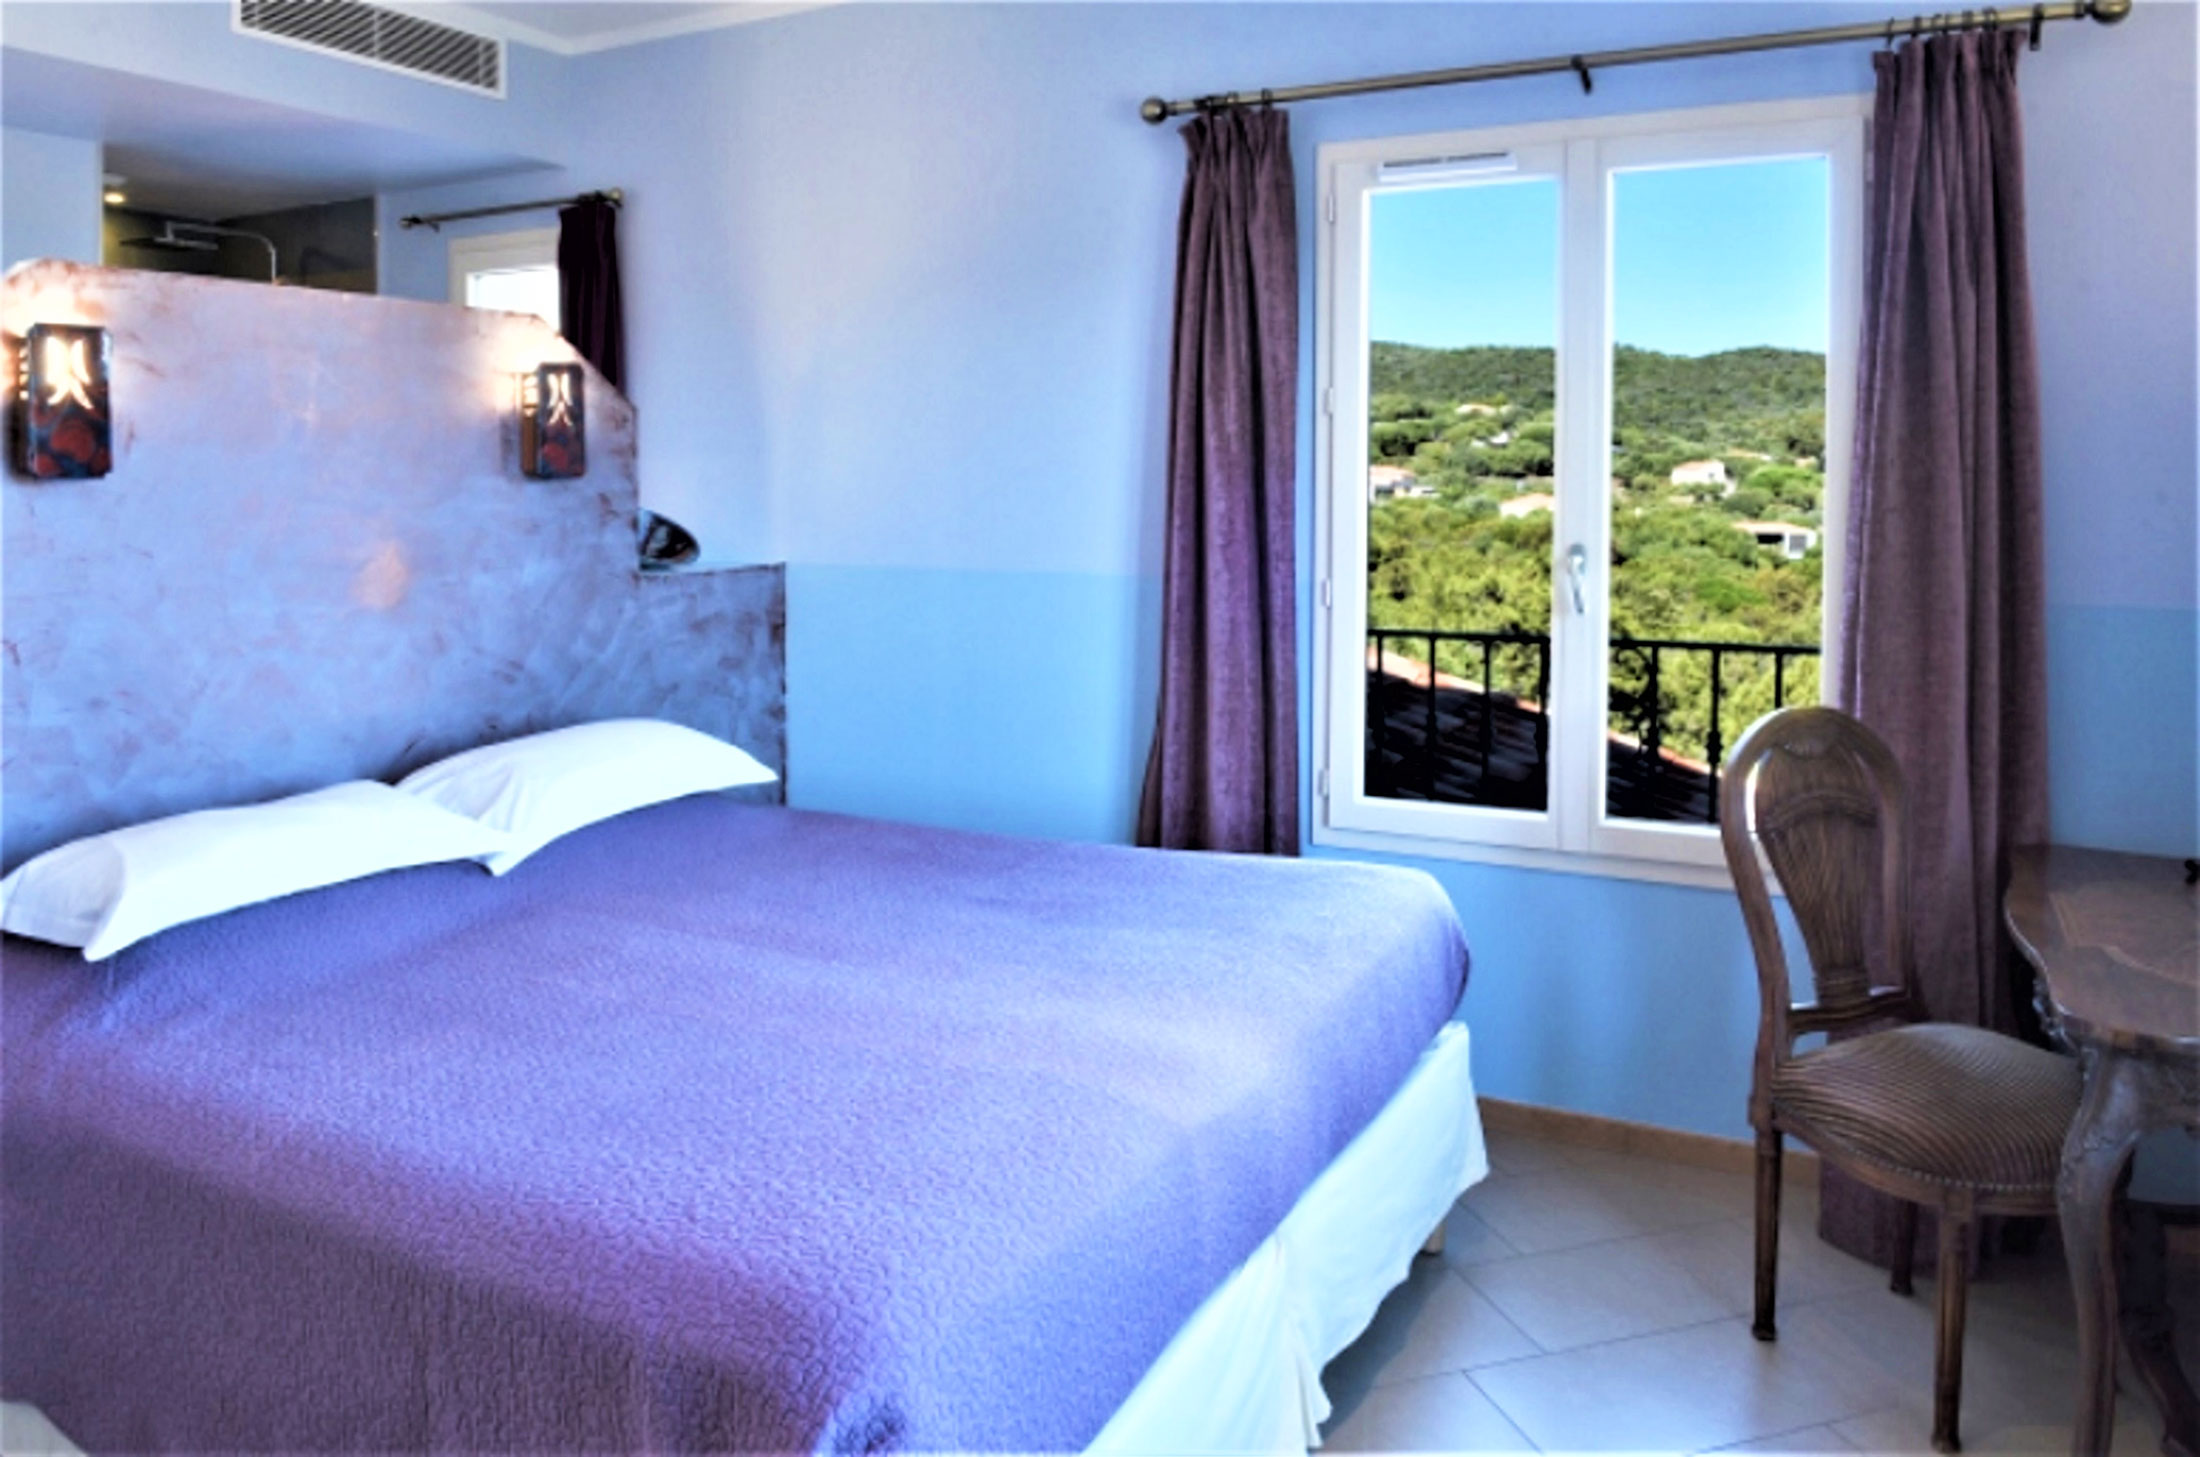 The Rooms Deluxe Room With Sea View 25m2 Artigiana Porto Pollo Hotel Casa Murina South Corsica